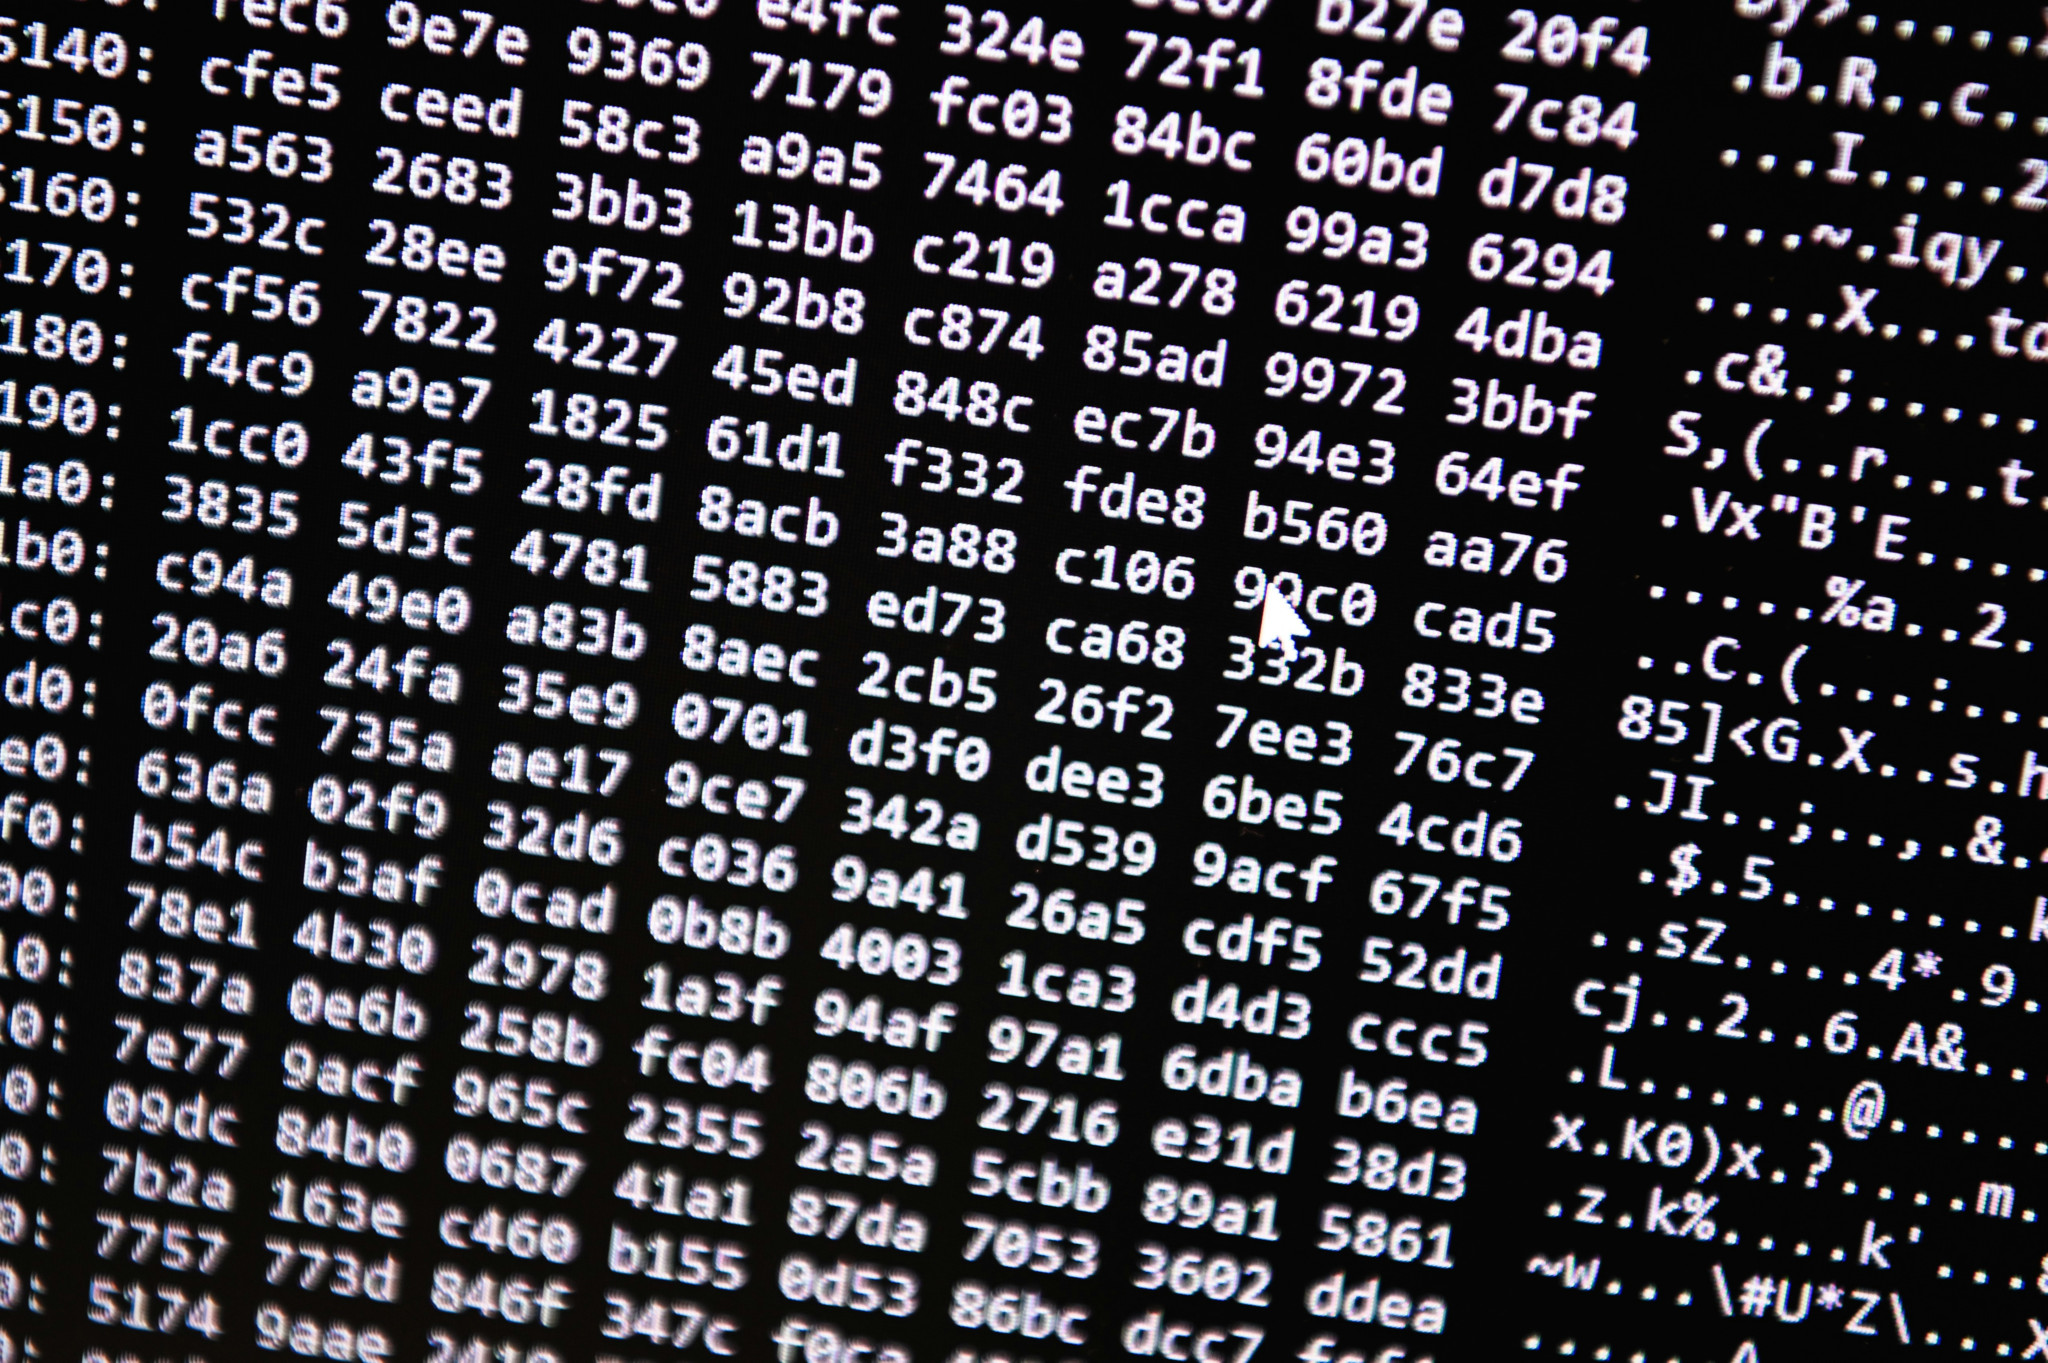 Bundesverwaltung: Hacker stehlen Daten